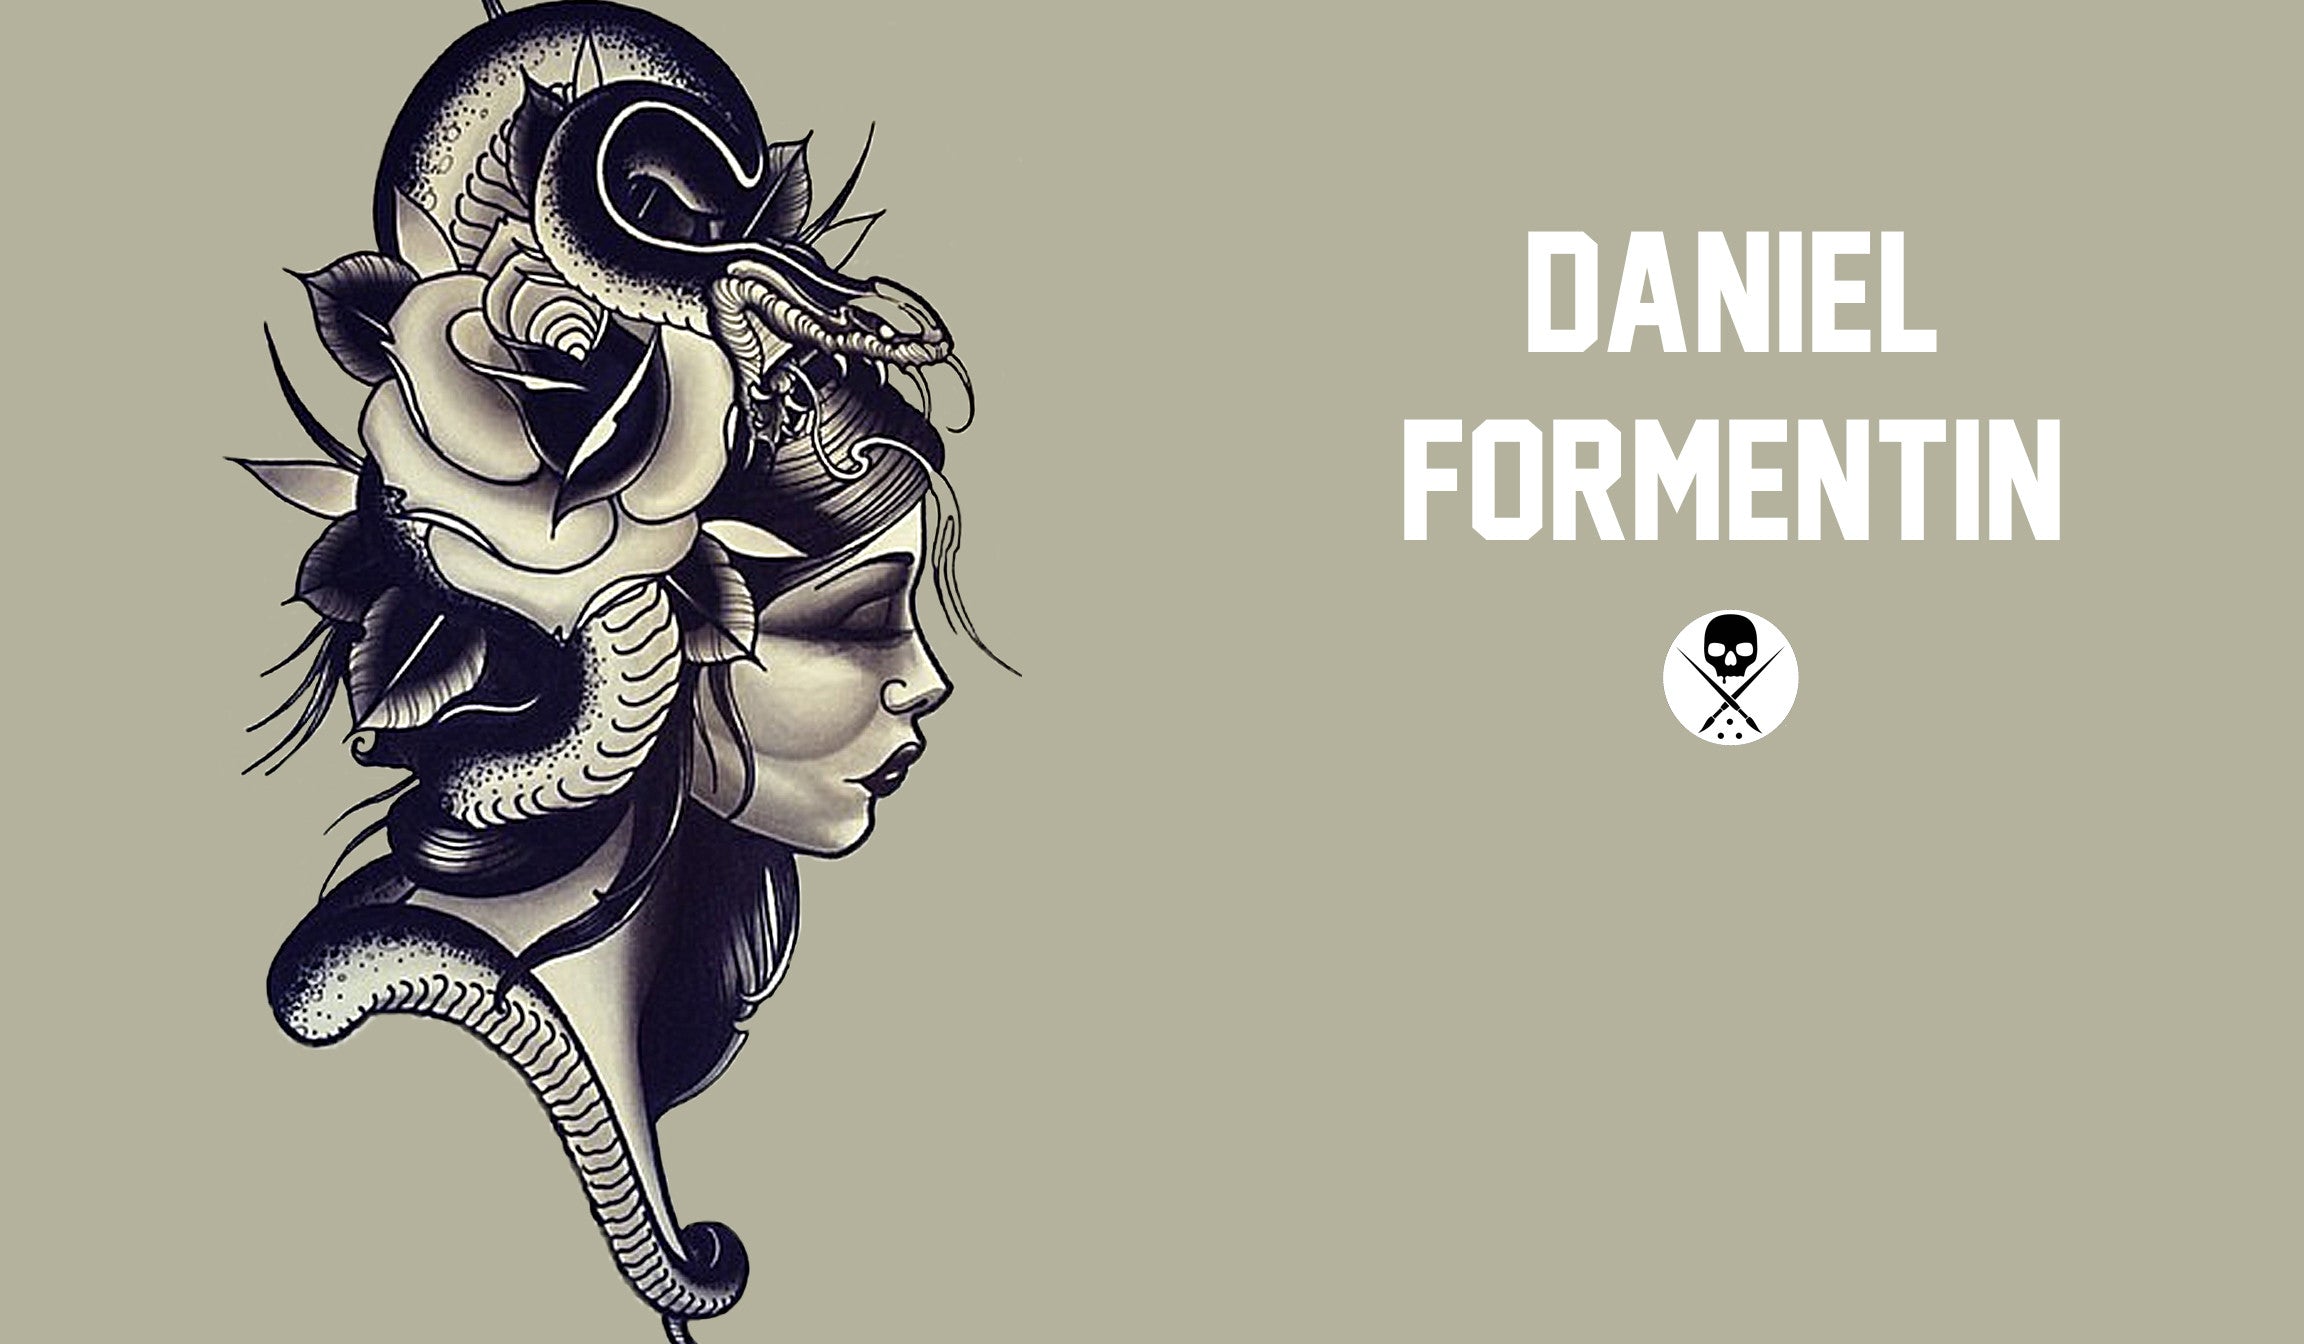 DANIEL FORMENTIN - TATTOO ARTIST SHIRT SERIES